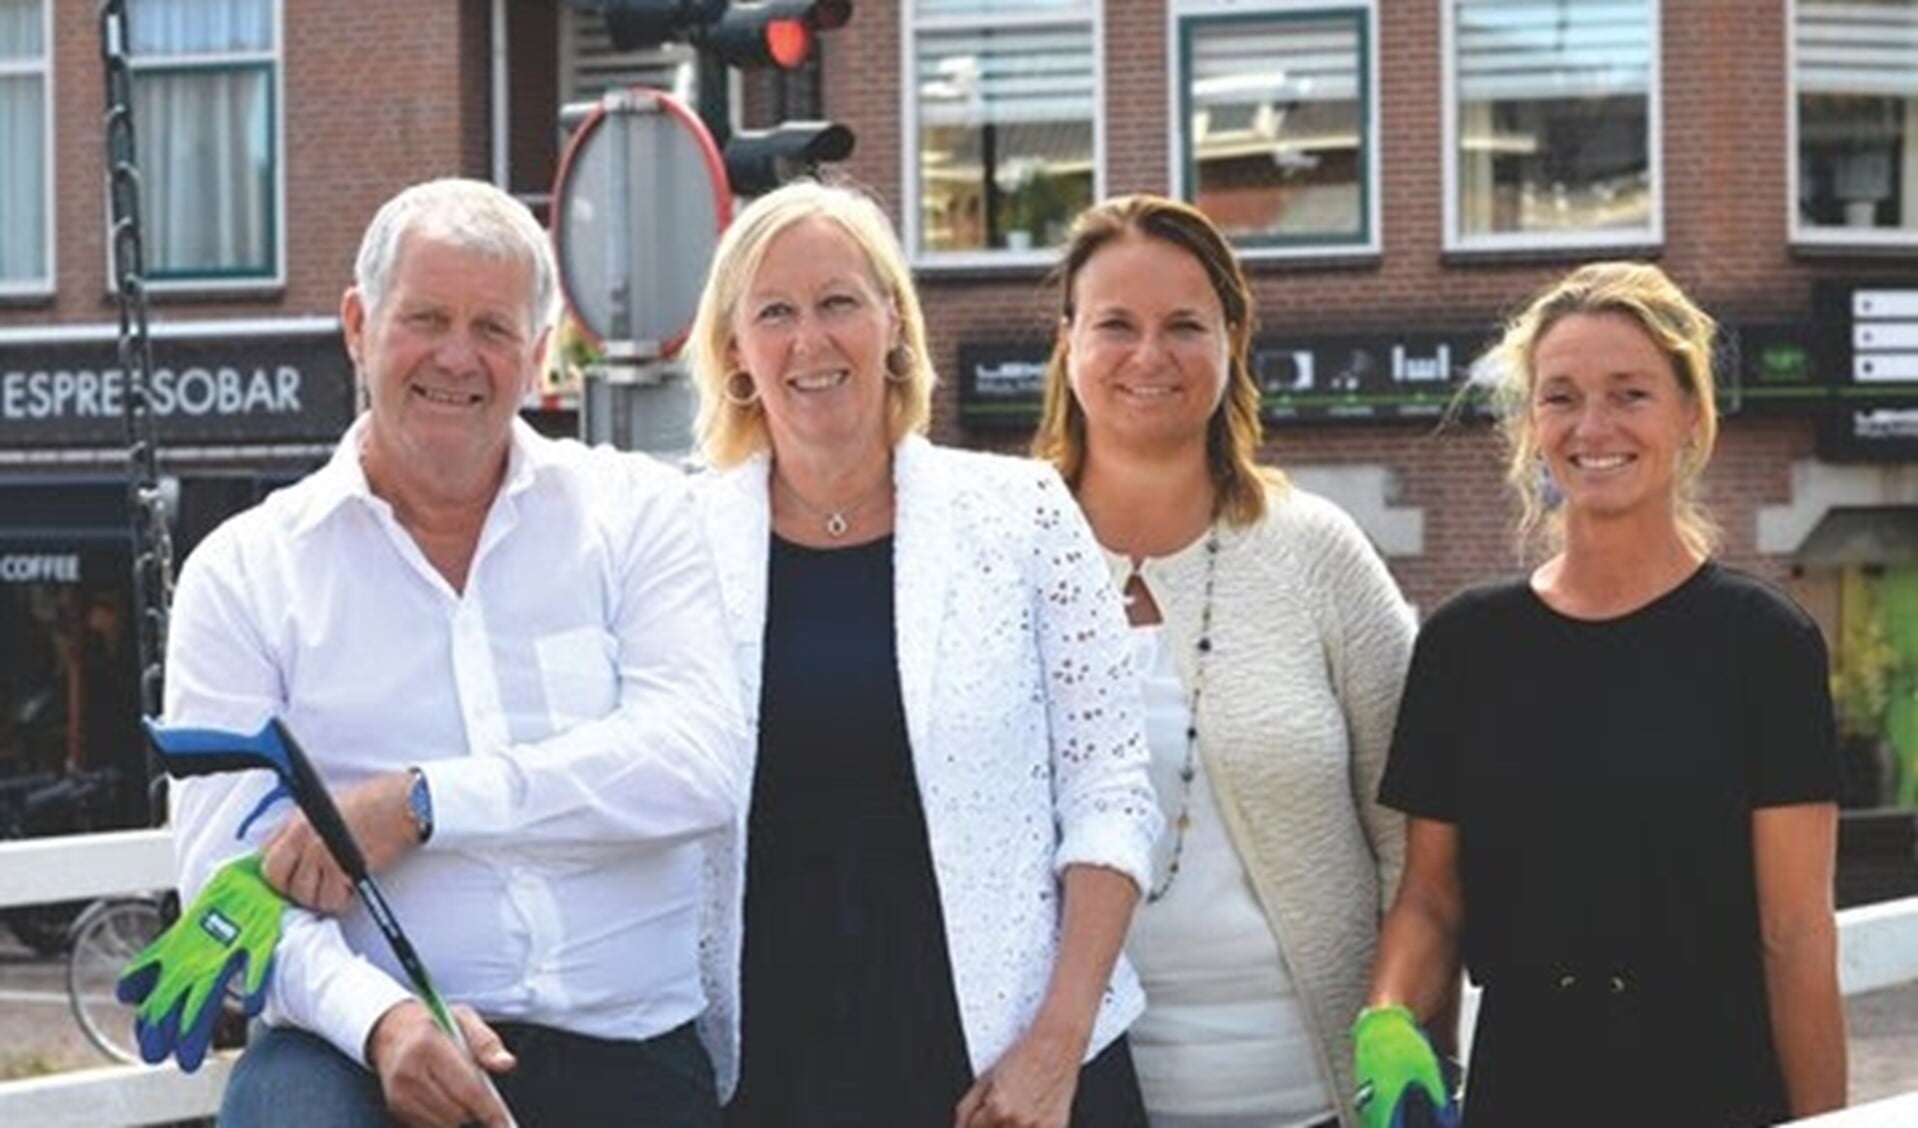 V.l.n.r.; Cock van Rijn, Astrid van Eekelen, Nadine Stemerdink en Vicky van der Krogt. (Foto: Yvette Koedam)